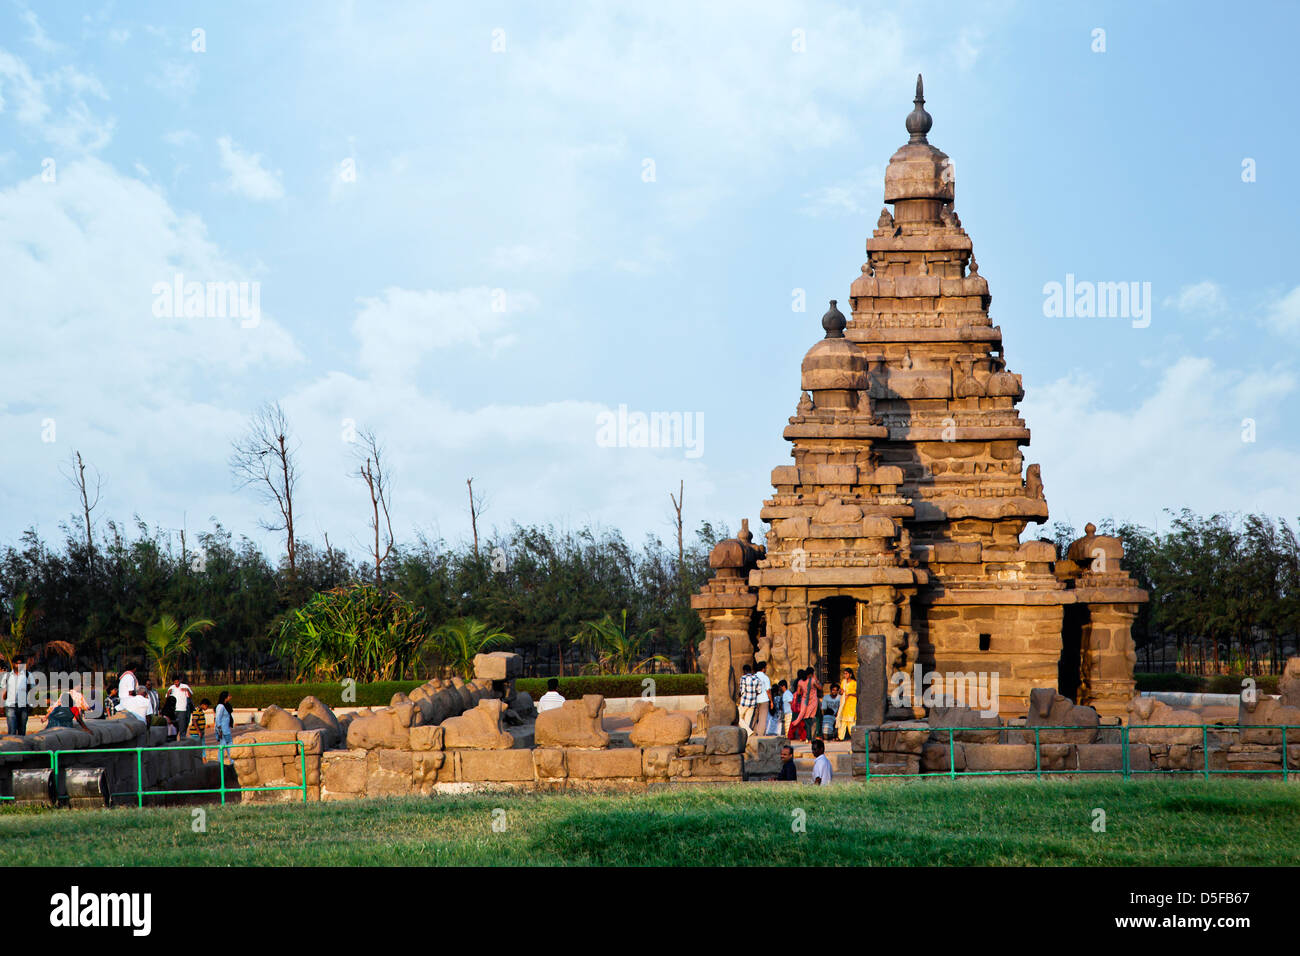 Les touristes à l'ancien temple du Rivage, Mahabalipuram, district de Kanchipuram, au Tamil Nadu, Inde Banque D'Images